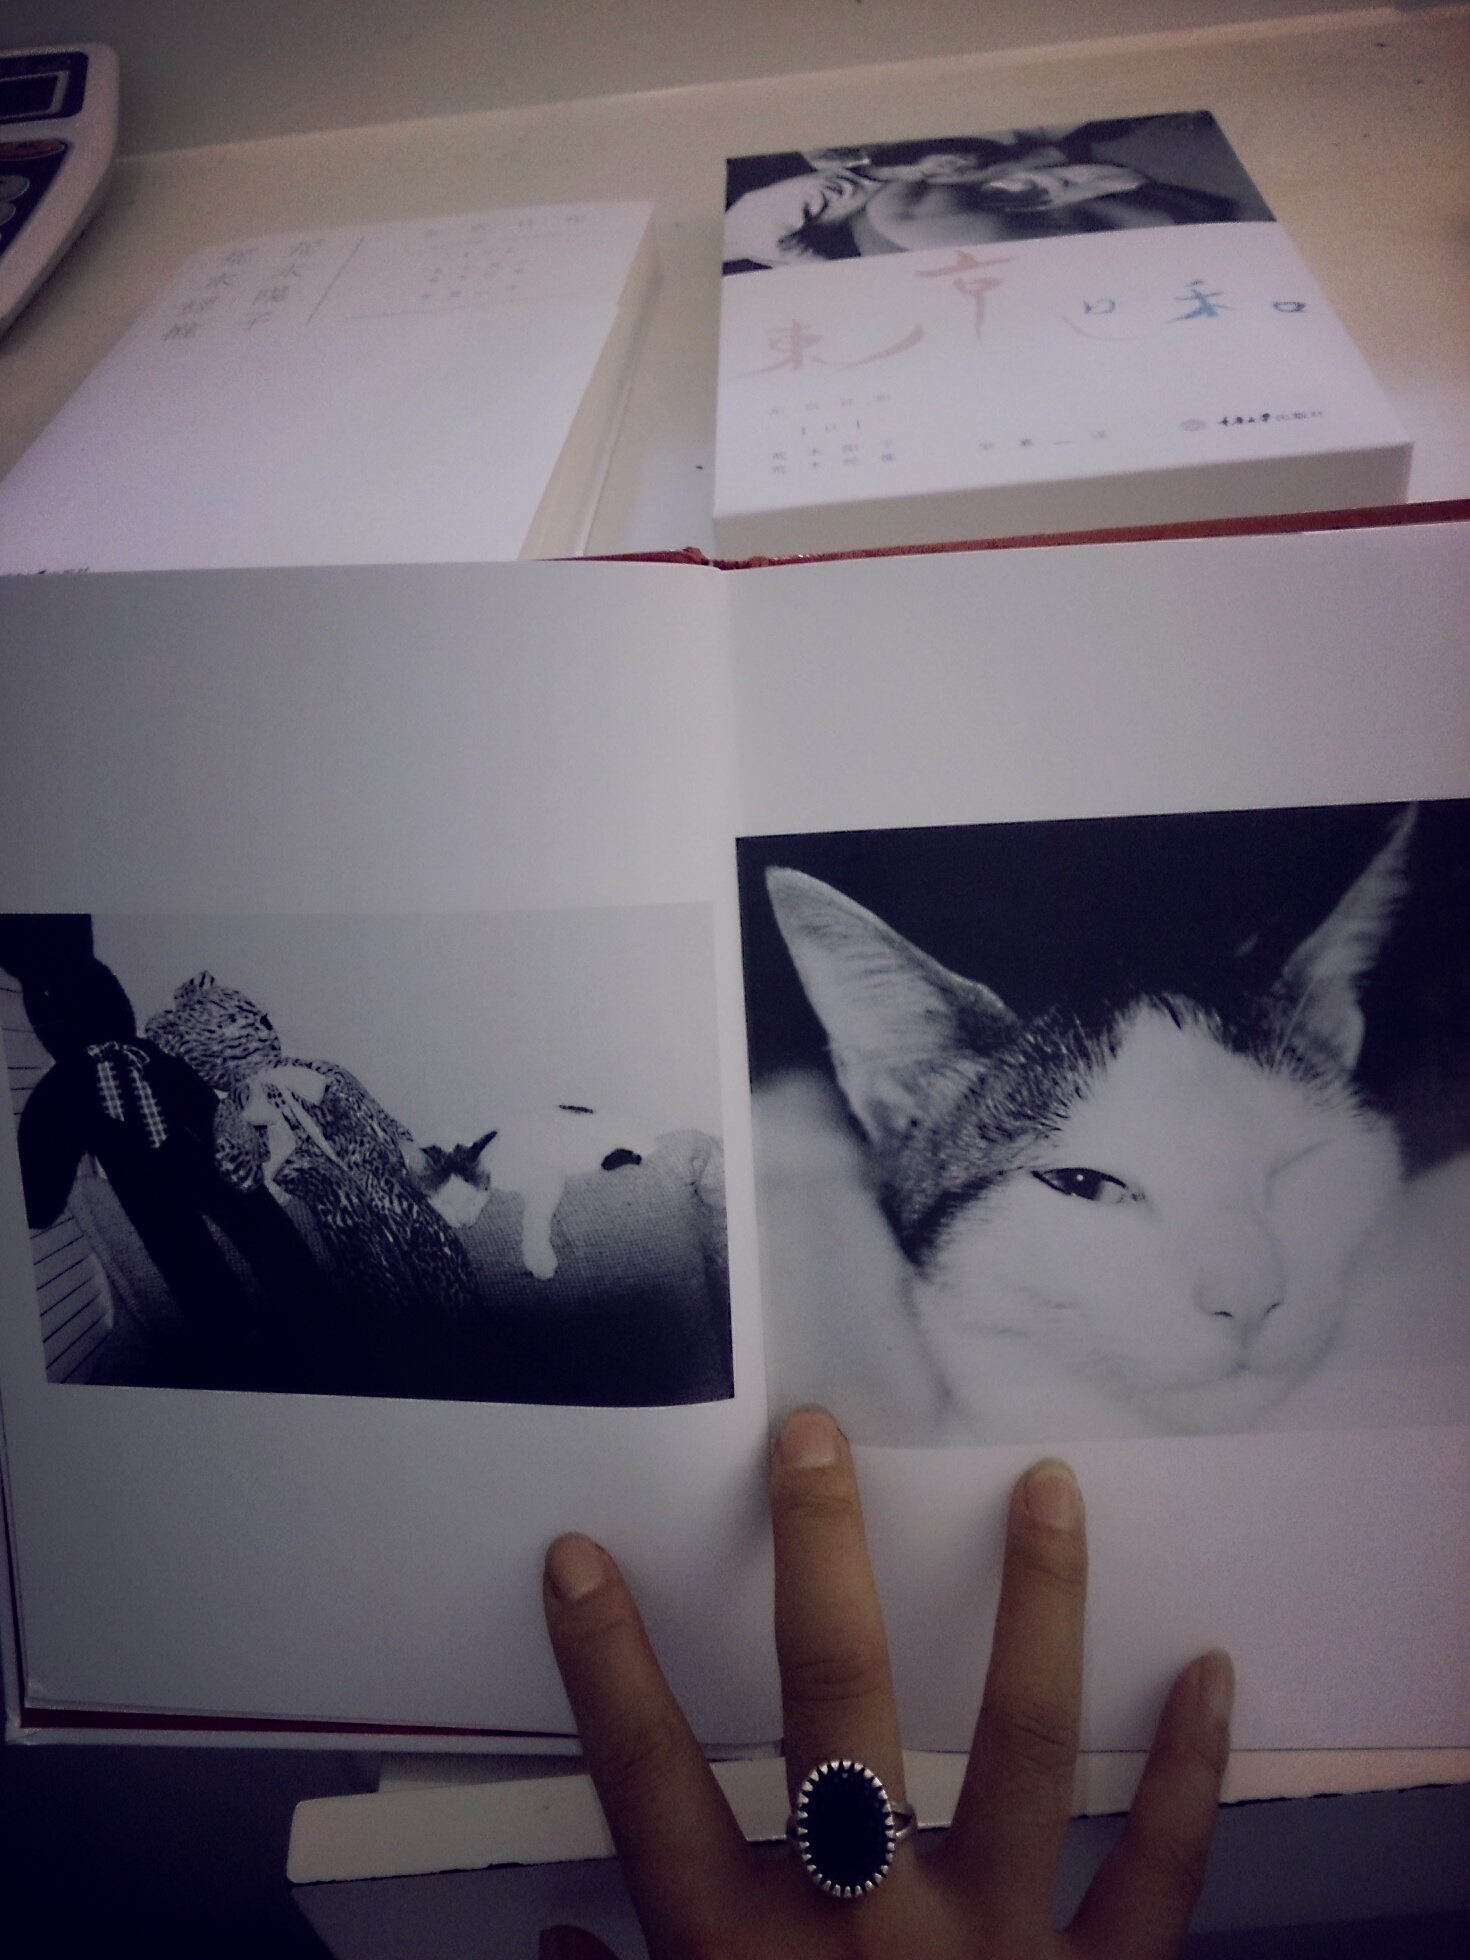 非常喜欢，非常爱啊。书本的纸张品质特别好，印刷也棒。没有什么文字，图片说明了一切，满满的都是爱。　★ 这是荒木经惟第一本关于动物的摄影集。透过132幅关于小猫奇洛的黑白照片、4篇共计不足三千字的手记，讲述小猫奇洛的生活点滴，镜头背后是这位摄影大师内心深处对爱猫、亡妻以至整个世界无边的温柔、爱与思念。　　★ 日积月累的生活，使人与动物之间的情谊变得亲昵而不可分离。所有爱猫人士都能感受这一点，荒木对奇洛亦是如此。　　★ 荒木原本是讨厌猫的，奇洛是荒木妻子阳子抱养回来的流浪猫。在与阳子最后的相处时光里，还有小猫奇洛陪伴荒木一起度过。荒木对奇洛的爱，就像他对阳子那样，炽热、毫无保留，爱它如同爱生命。　　★ 森山大道曾说他像狗一样每日独行街头，排泄似的拍照；荒木却更偏爱留在和阳子共同生活的爱巢，珍惜着与奇洛的每一刻相处，并用“奇能35~80”（奇洛专用照相机）细腻温柔地捕捉着它的每一个鲜活瞬间。　　★ 直到阳子逝世，这本小猫奇洛的影集一直伴随着她；后来奇洛也离荒木而去，他终于孑然一身，却至少还有这些留住时光的影像，陪他走过这些孤独年岁，点缀出微弱温暖的光。　　★ 我太爱奇洛了，爱到尽量不去想象。　　……　　我特别留意奇洛偶尔蓦然凝望阳台景致的时刻——也许是某种醒悟，或是不断地思考、观望、聆听、望向天际等等，就这样静止不动地看着外头。这种背影完全征服了我，其中似乎包含着人生的无奈，向我诉说着许多故事。　　——荒木经惟